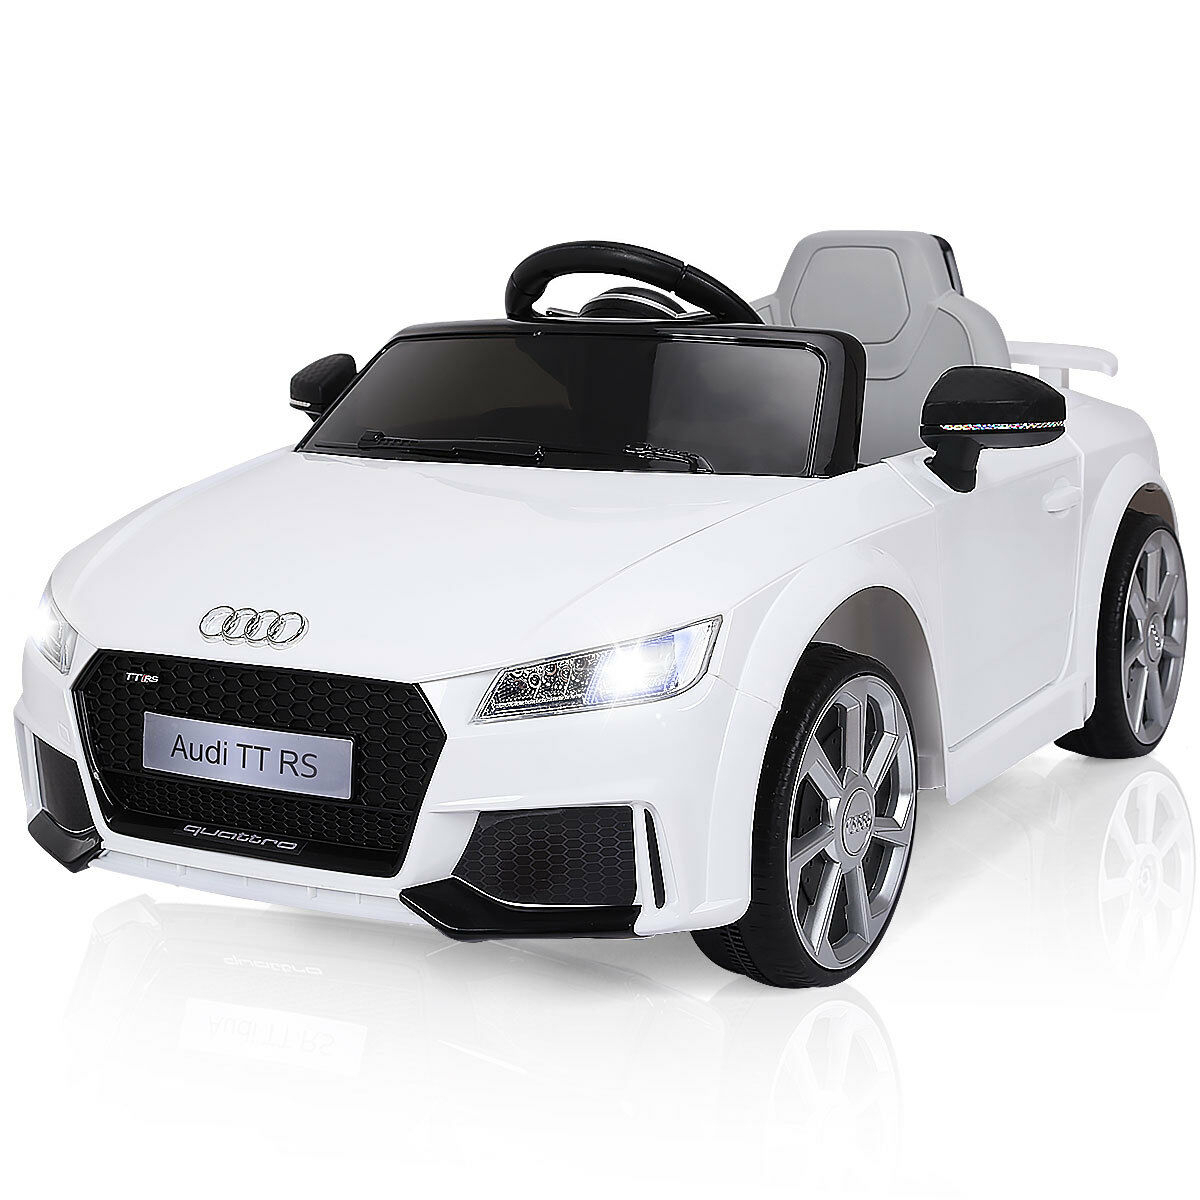 12V Audi TT RS Electric Kids Ride On Car Licensed Remote Control MP3 - Black